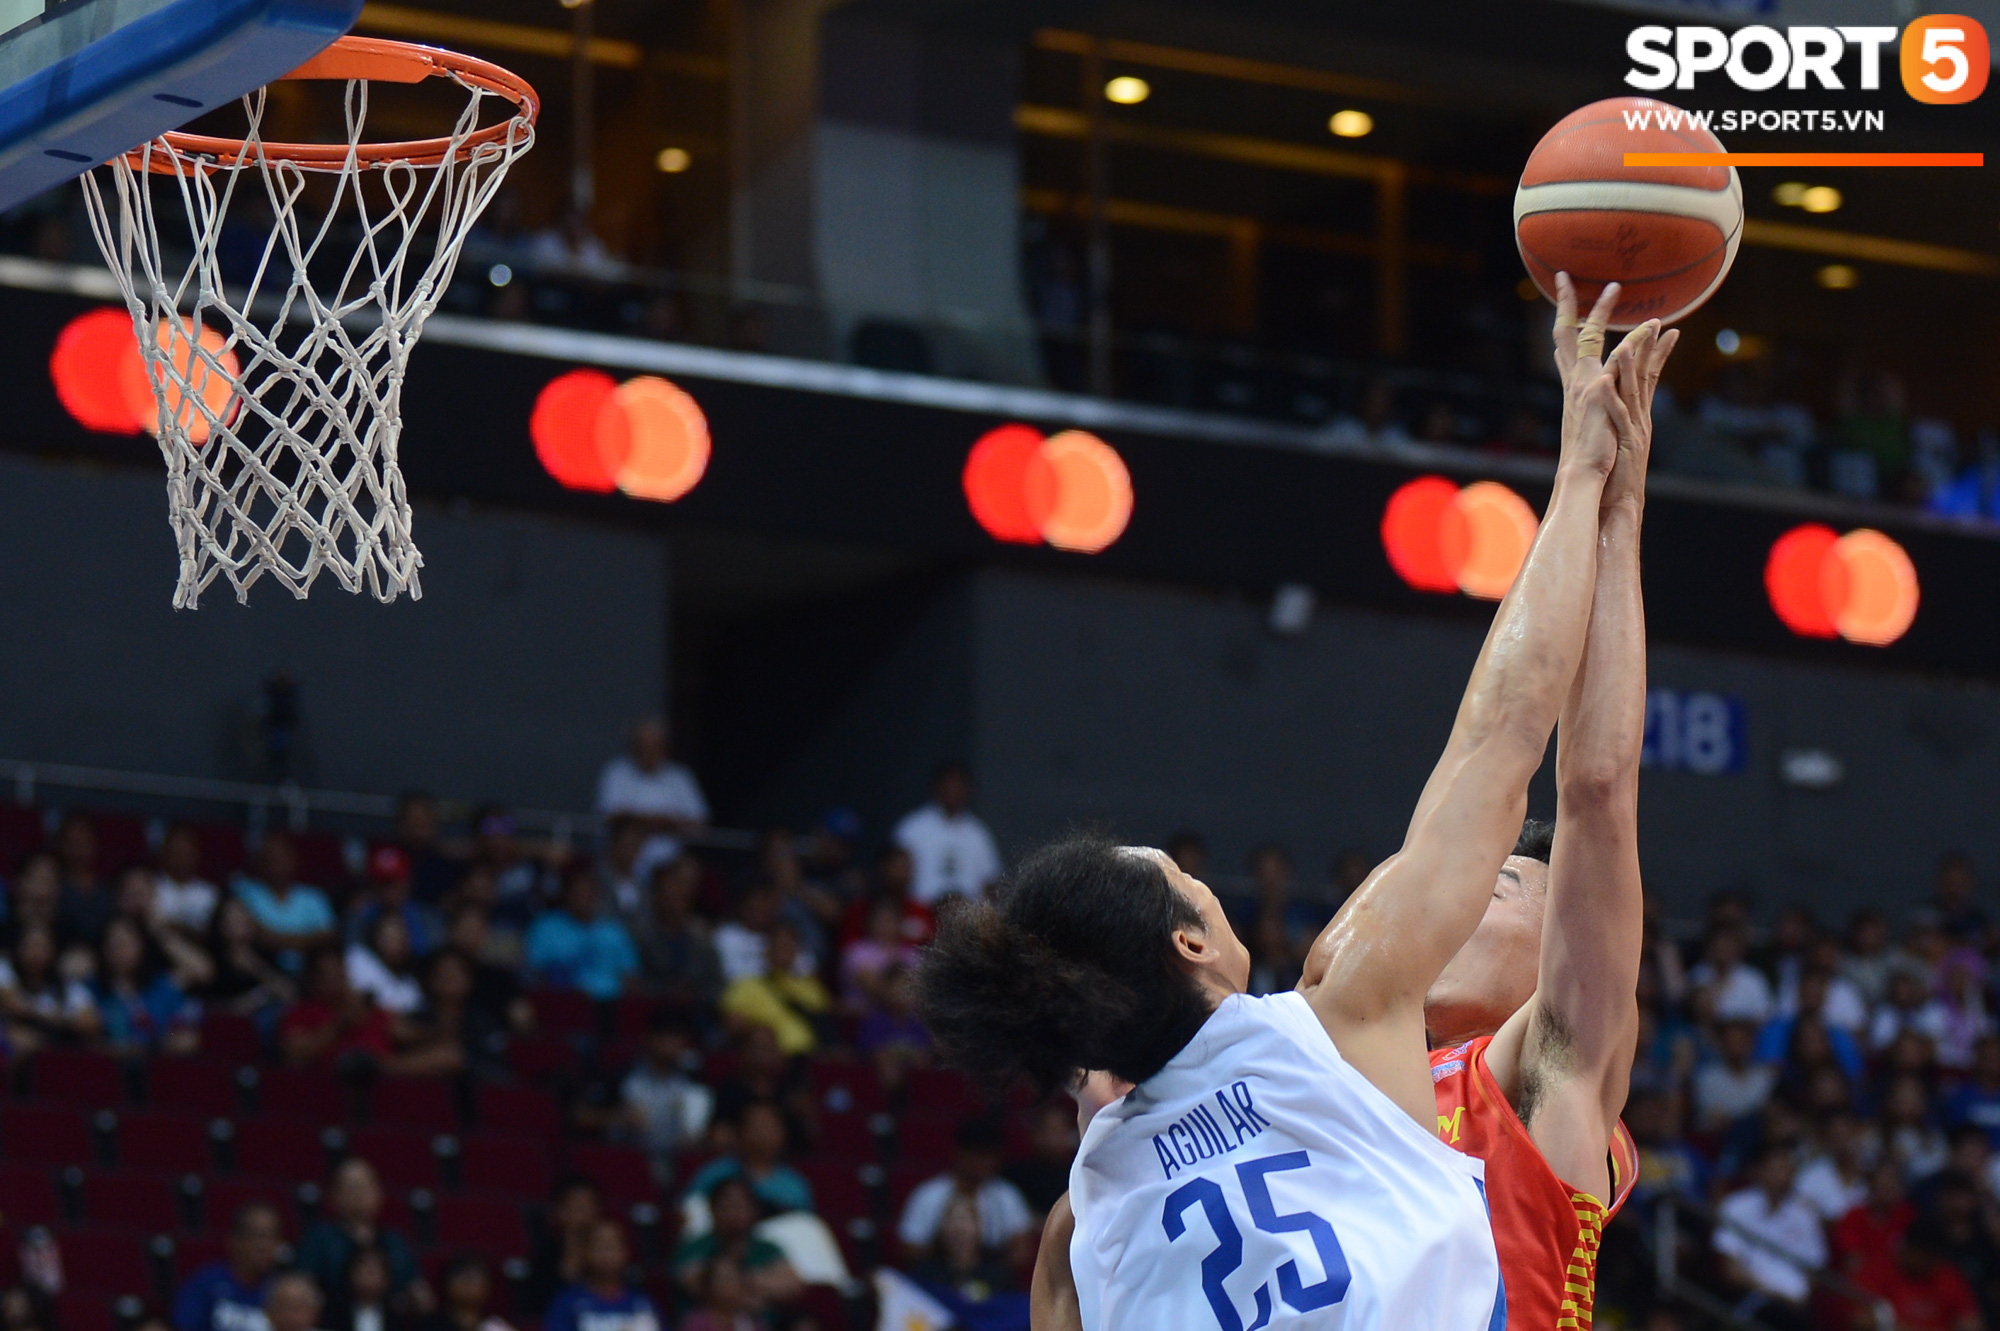 Choáng ngợp trước vẻ hào nhoáng của nhà thi đấu và sức ép từ 15.000 CĐV chủ nhà Philippines mà tuyển bóng rổ Việt Nam phải đối mặt - Ảnh 8.